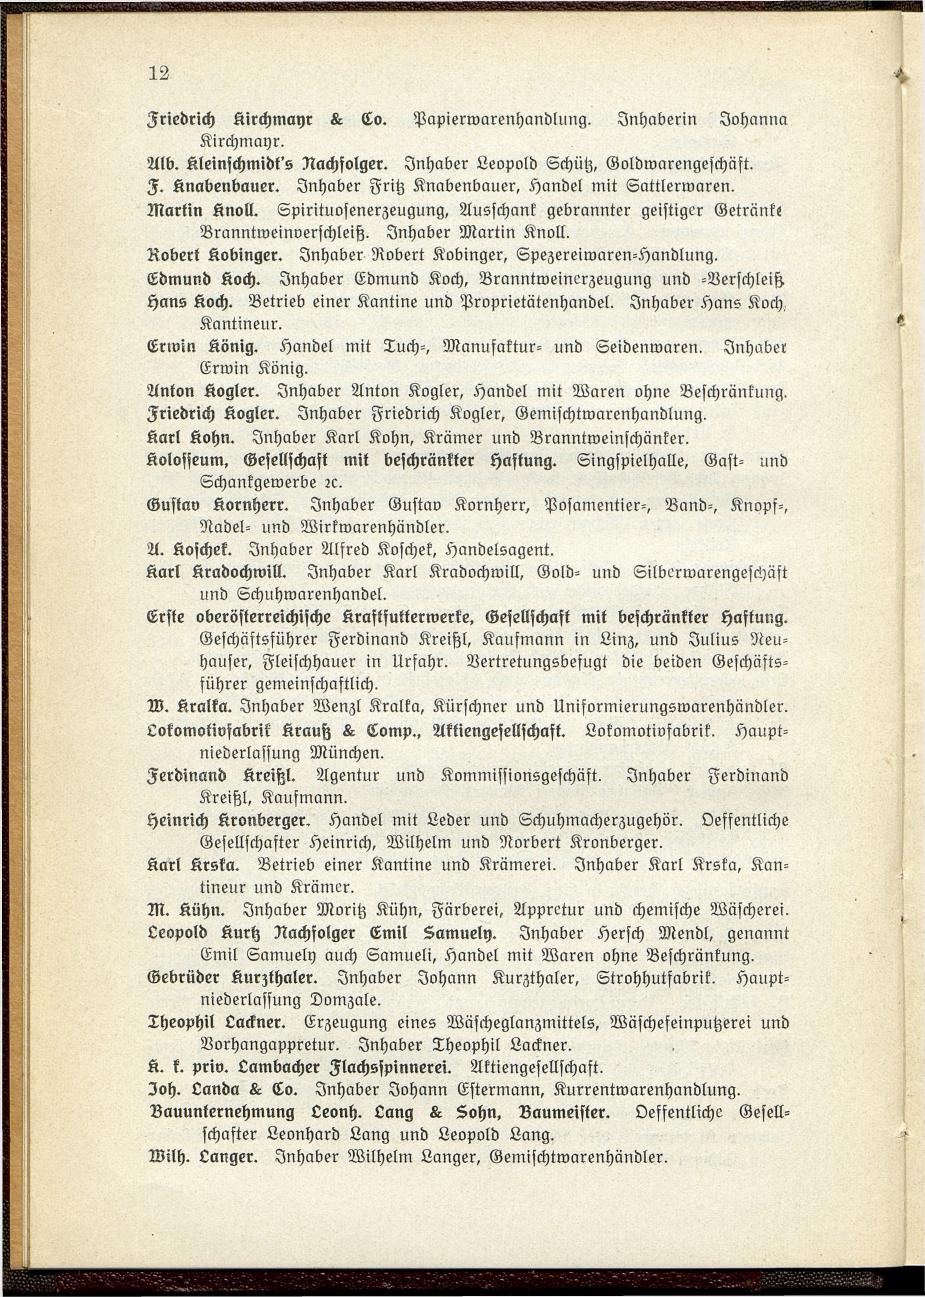 Verzeichnis der handelsgerichtlich protokollierten Firmen sowie der registrierten Erwerbs- und Wirtschafts-Genossenschaften in Oberösterreich 1914 - Page 14